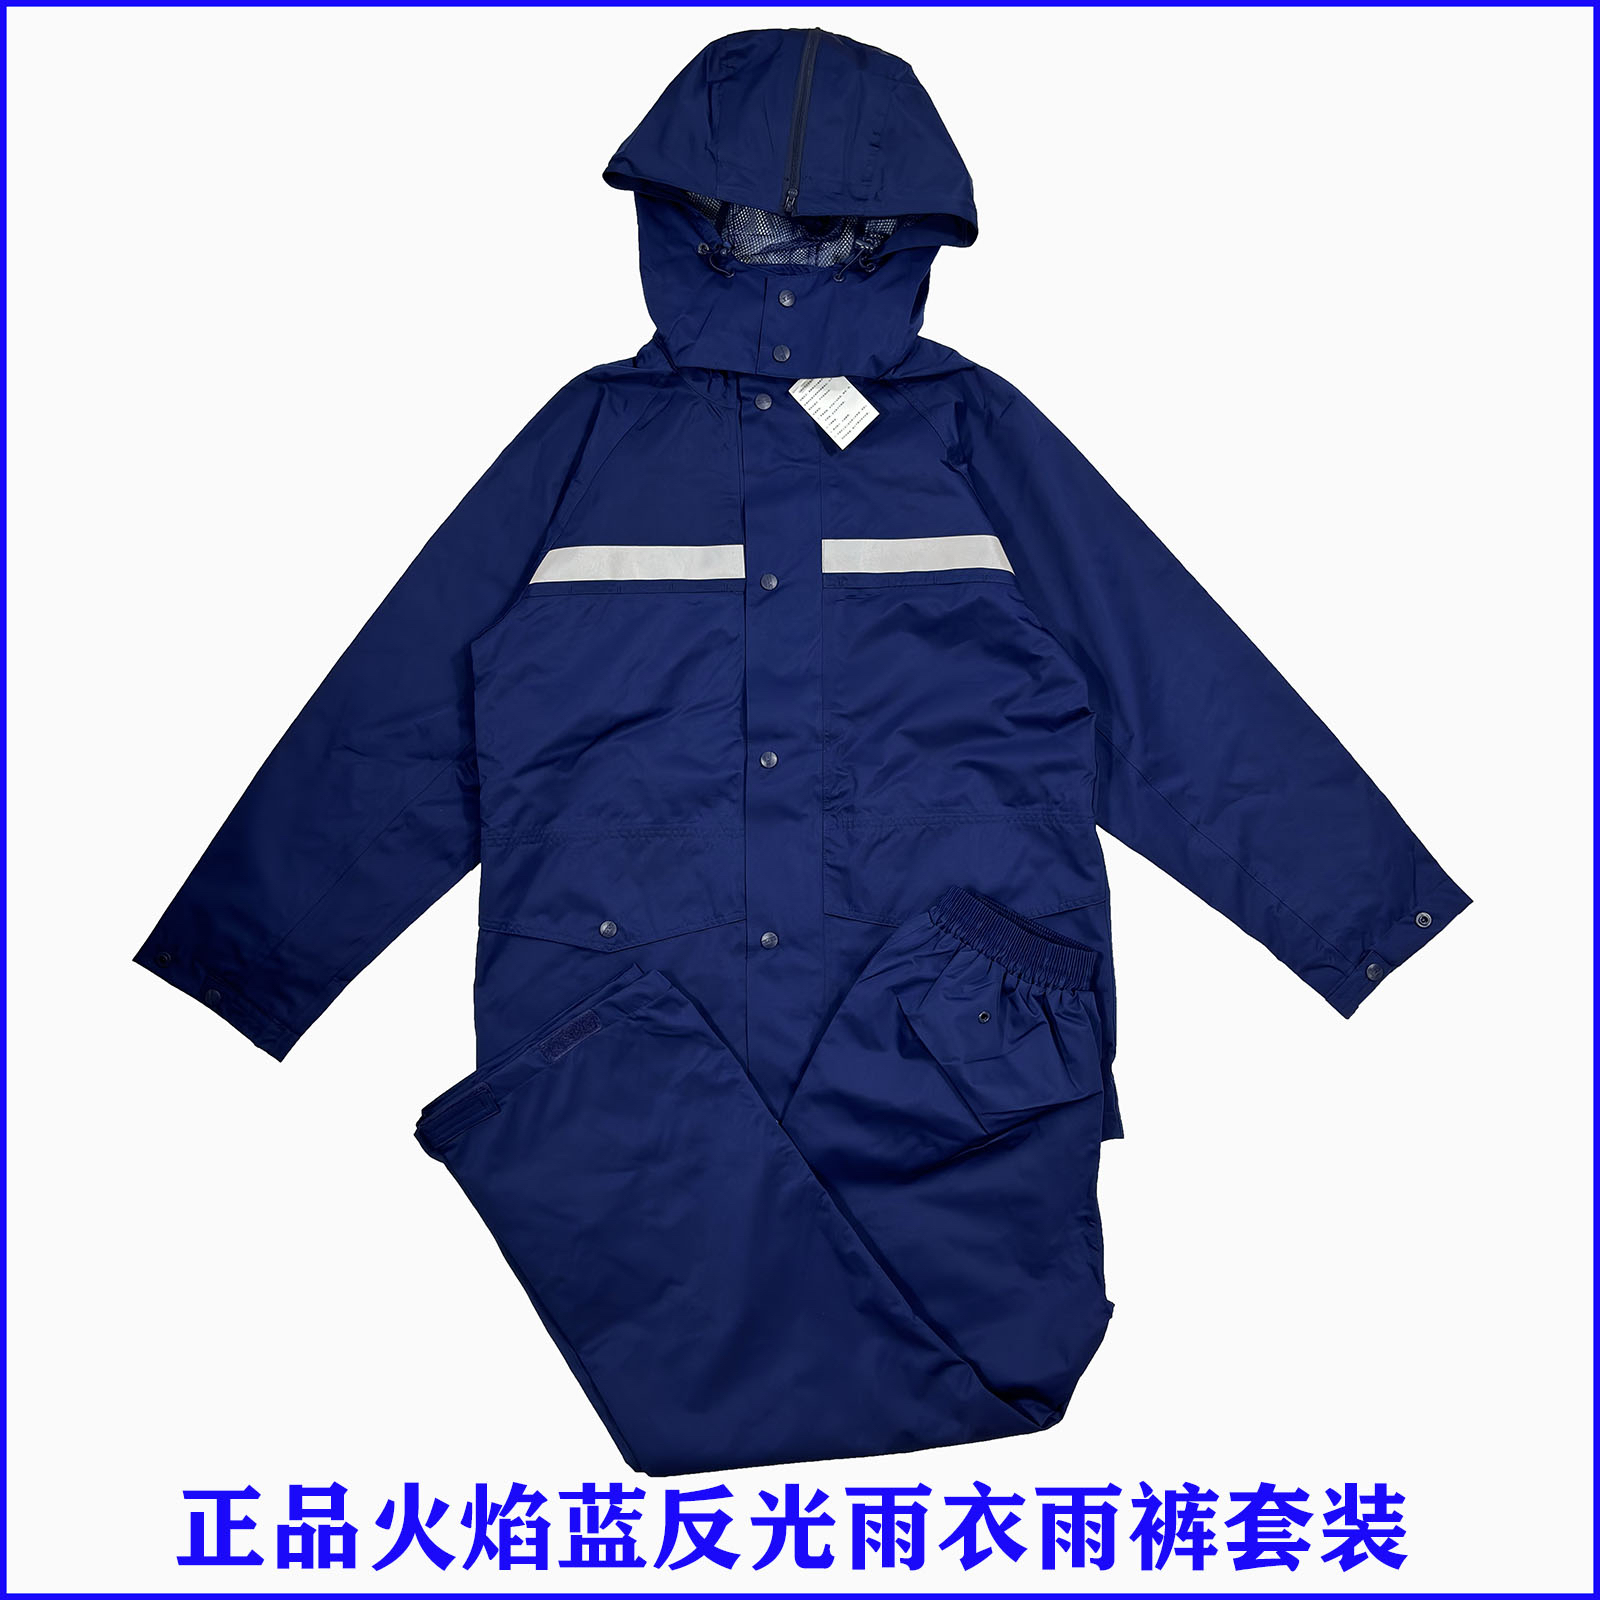 新式消防雨衣雨裤套装男女户外骑行雨披抢险救援火焰蓝分体雨衣